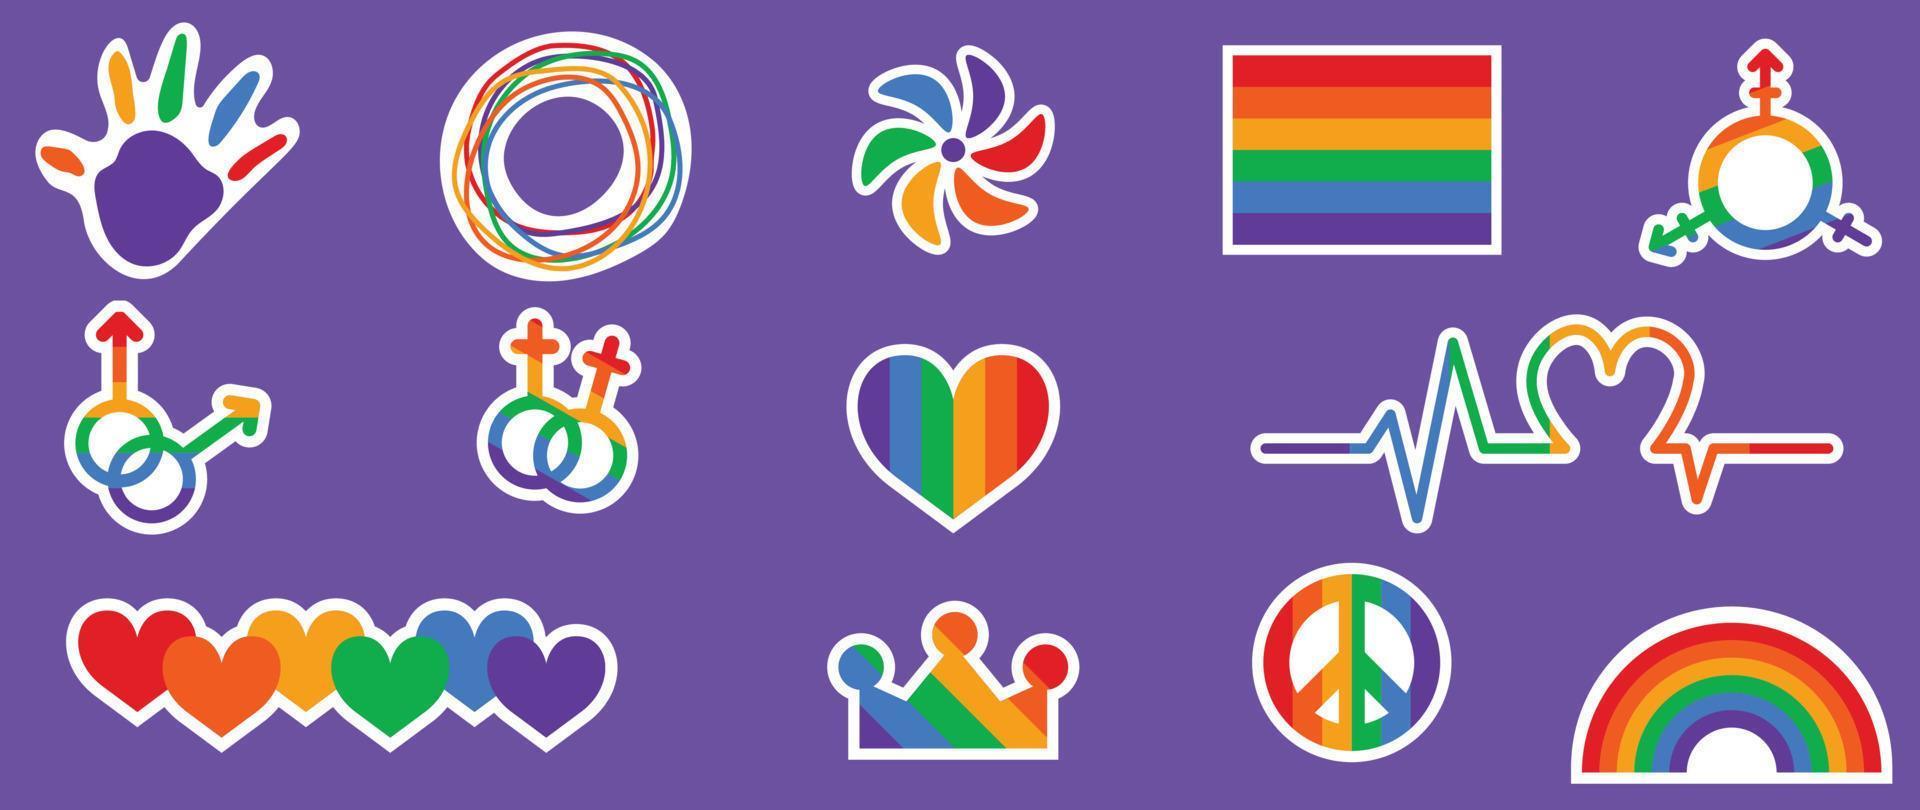 gelukkig trots lgbtq element set. lgbtq gemeenschap symbolen met regenboog vlag, Golf, kroon, hart. elementen geïllustreerd voor trots maand, biseksueel, transgender, geslacht gelijkwaardigheid, sticker, rechten concept. vector